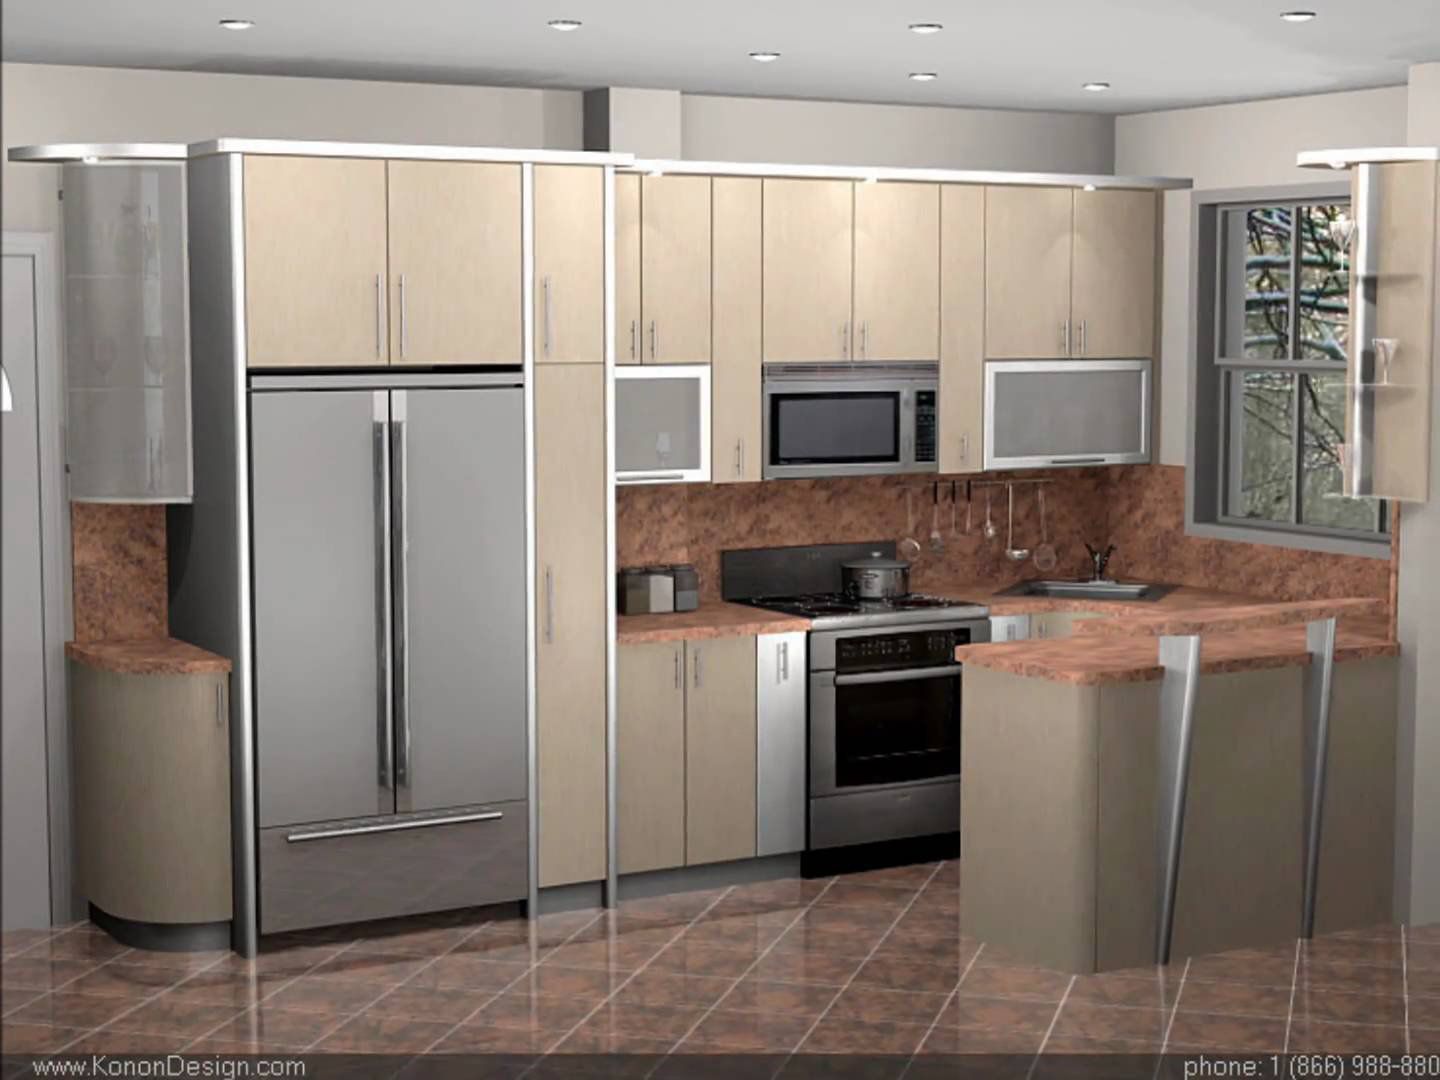 Efficient kitchen design ideas | Hawk Haven